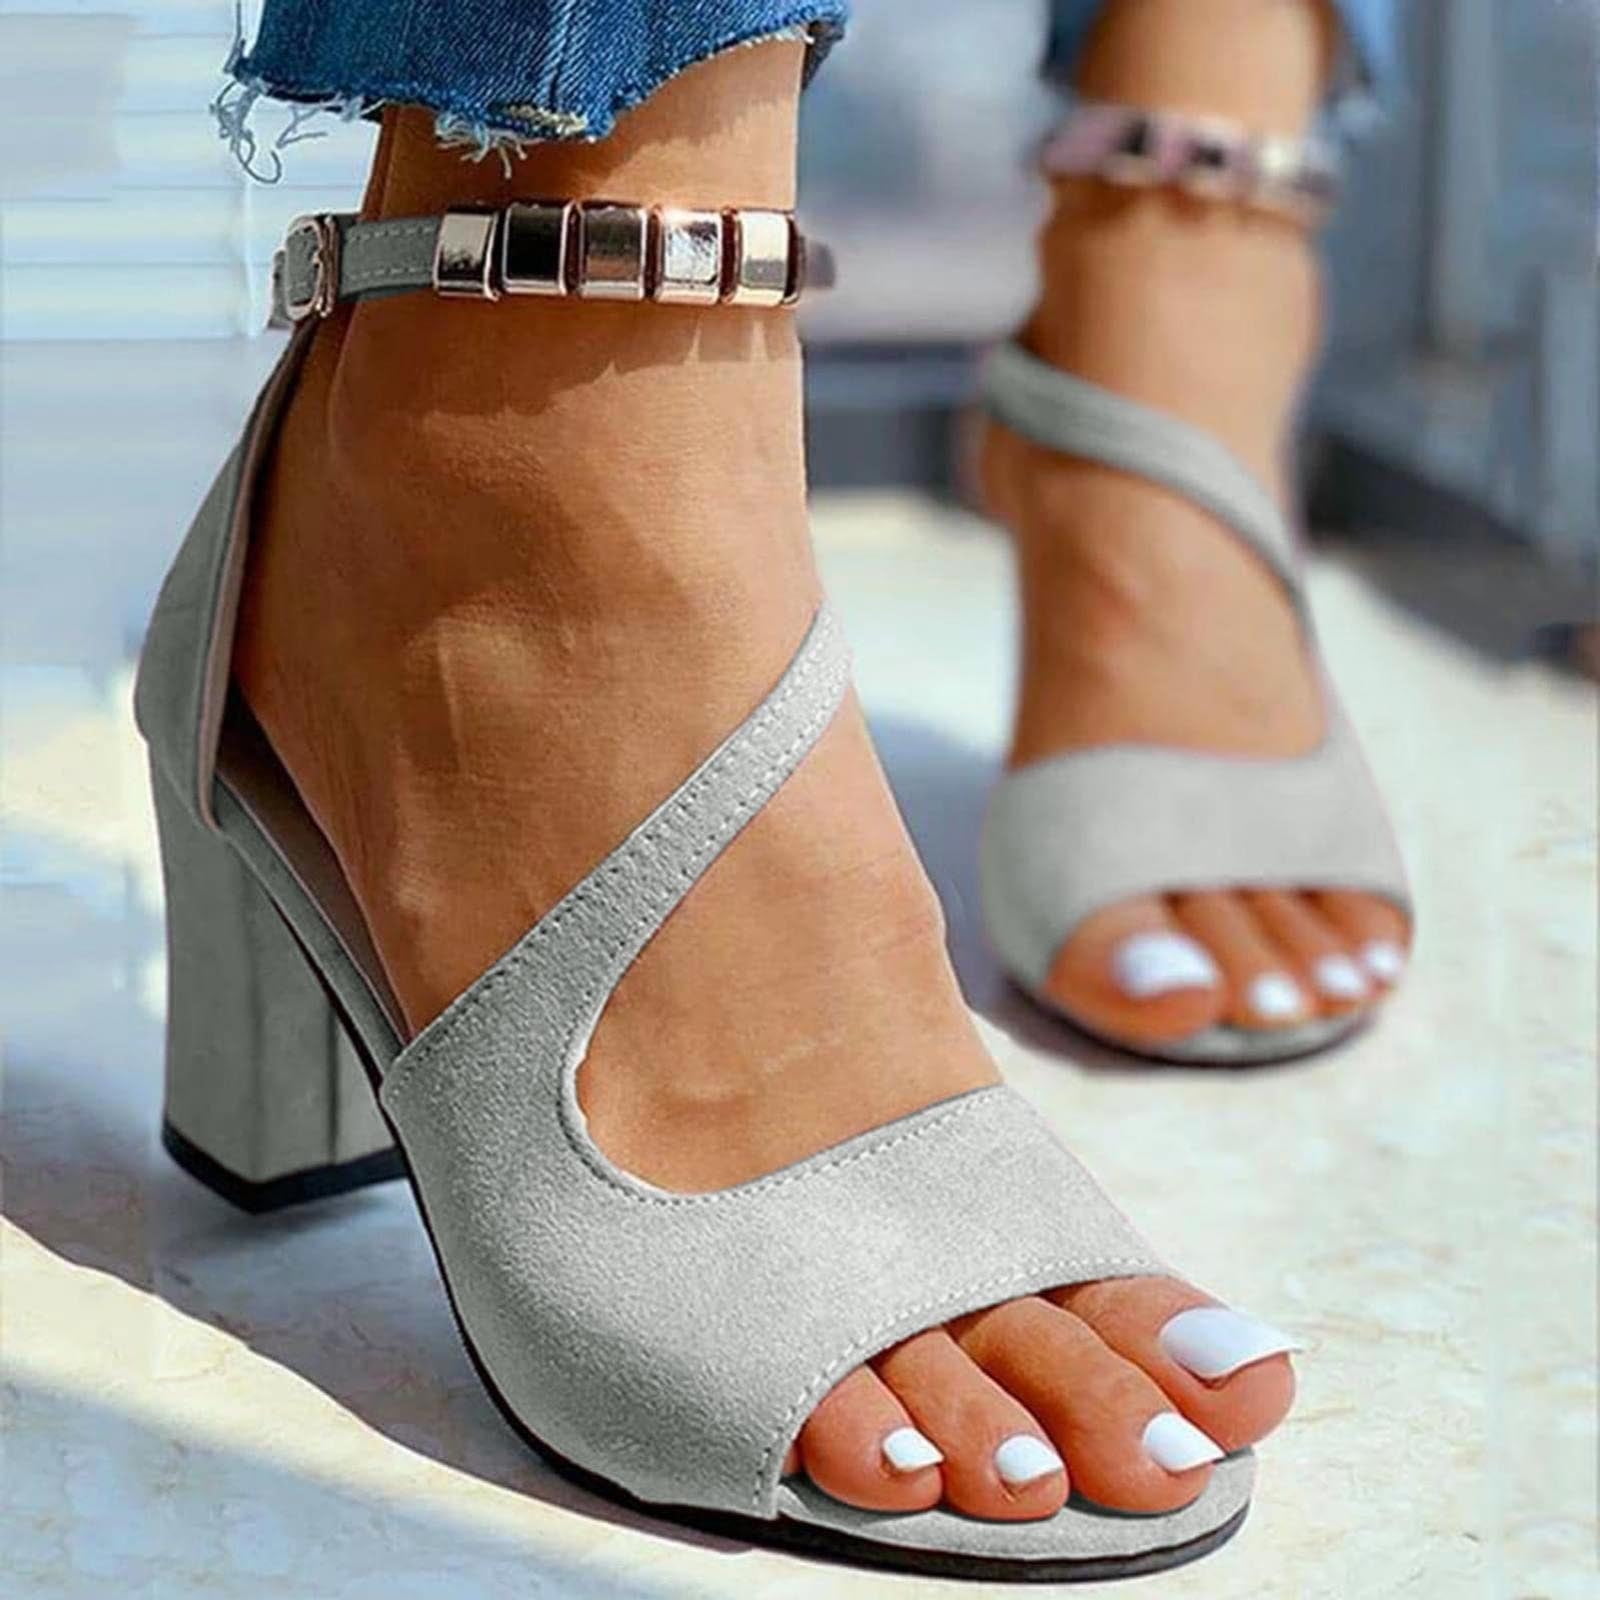 dress sandals for women